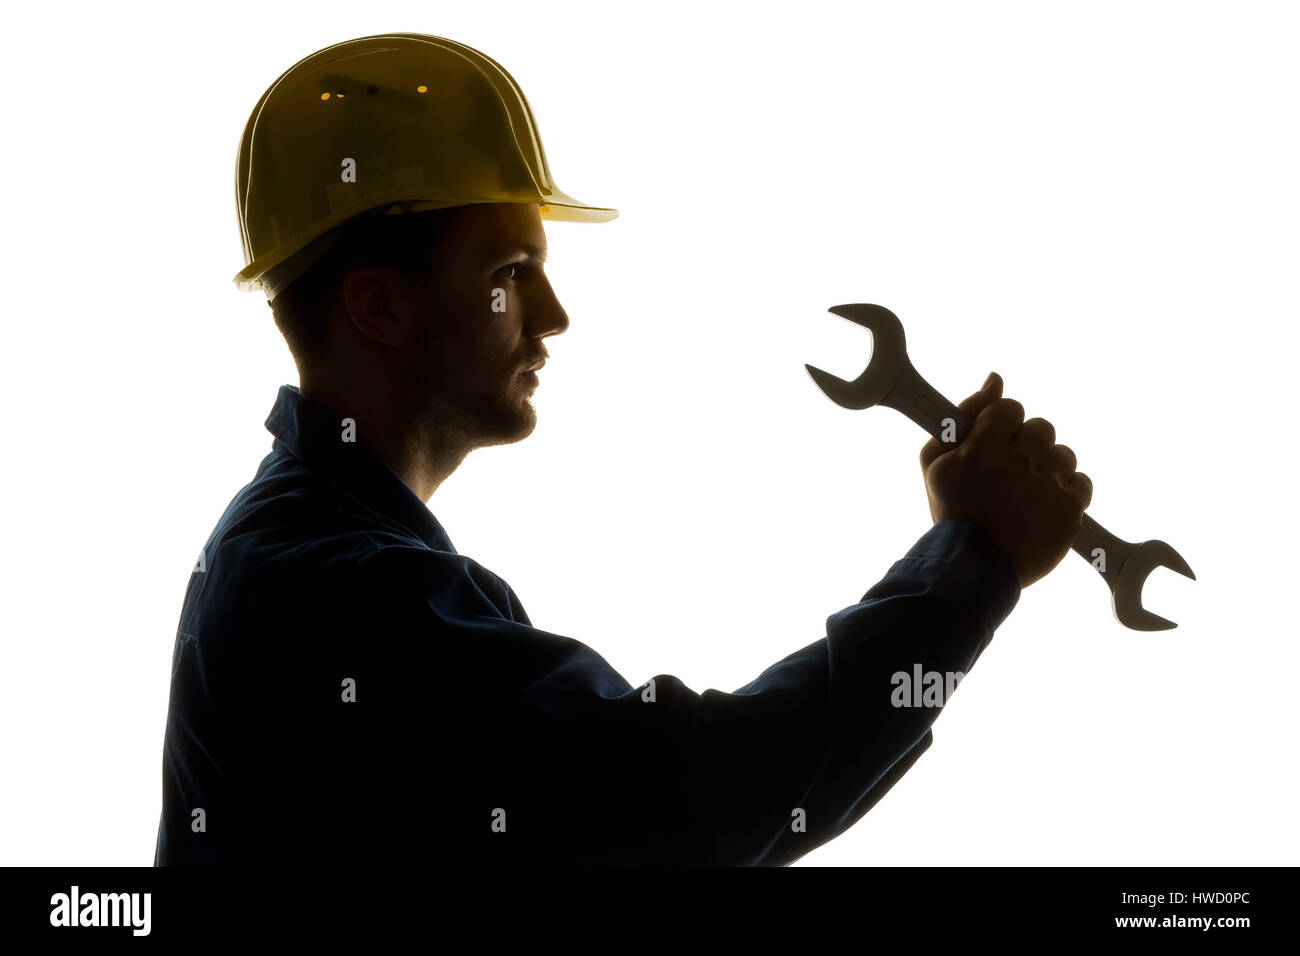 A worker in an industrial concern craftsman with tools in the hand, Ein Arbeiter in einem Gewerbebetrieb ( Handwerker ) mit Werkzeug in der Hand Stock Photo